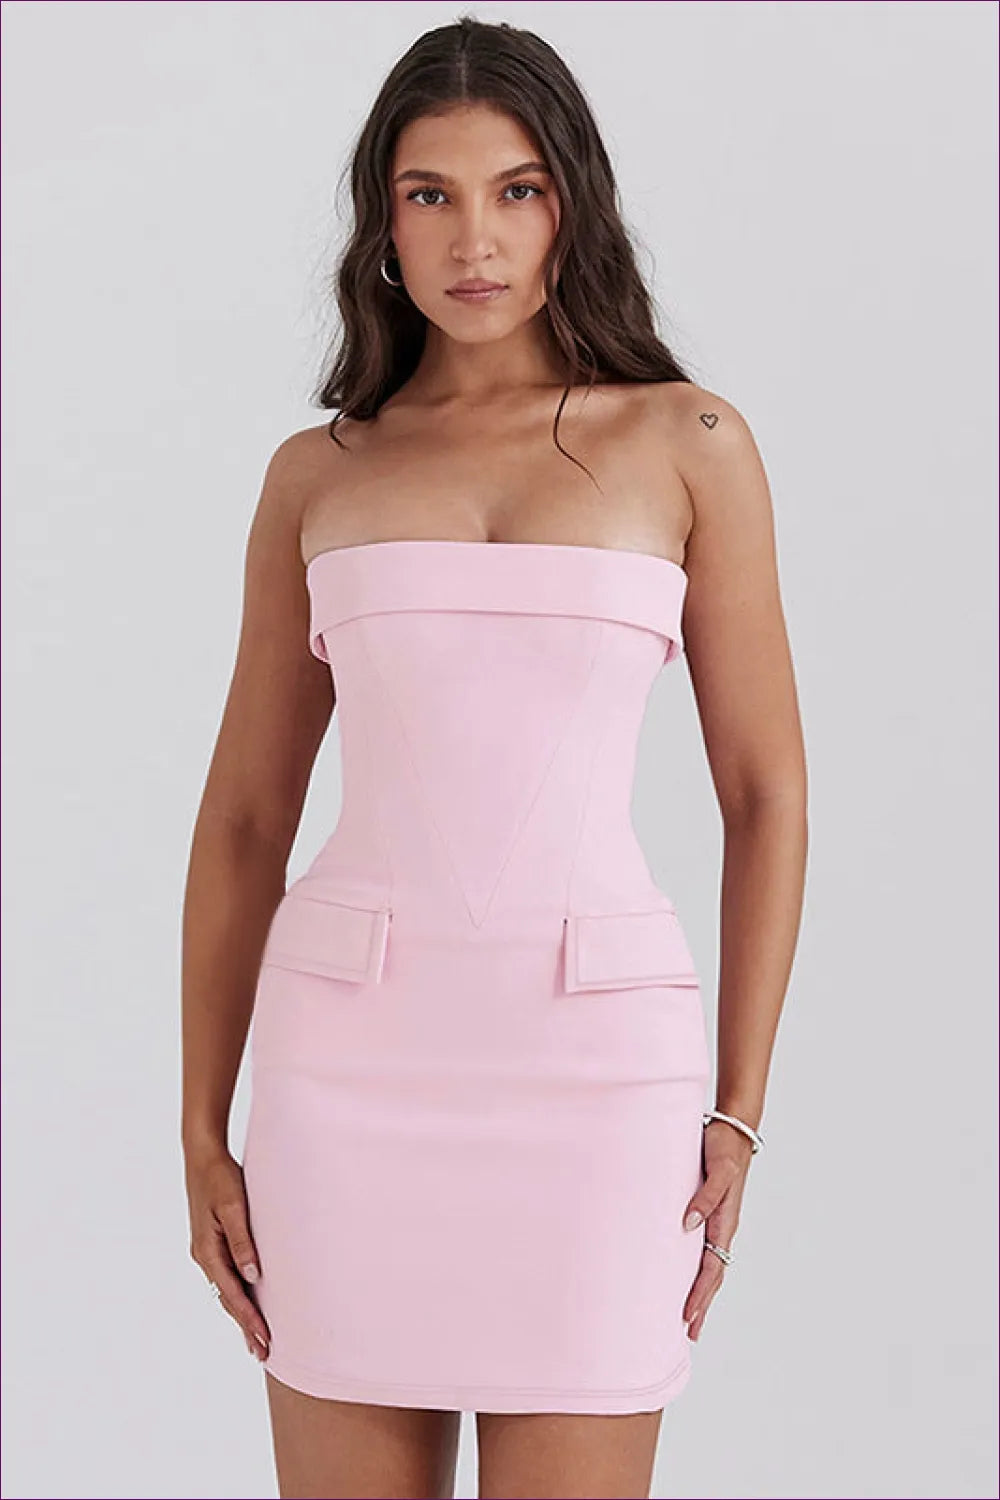 Elegant Strapless Pink Mini Dress - Timeless Glamour For n